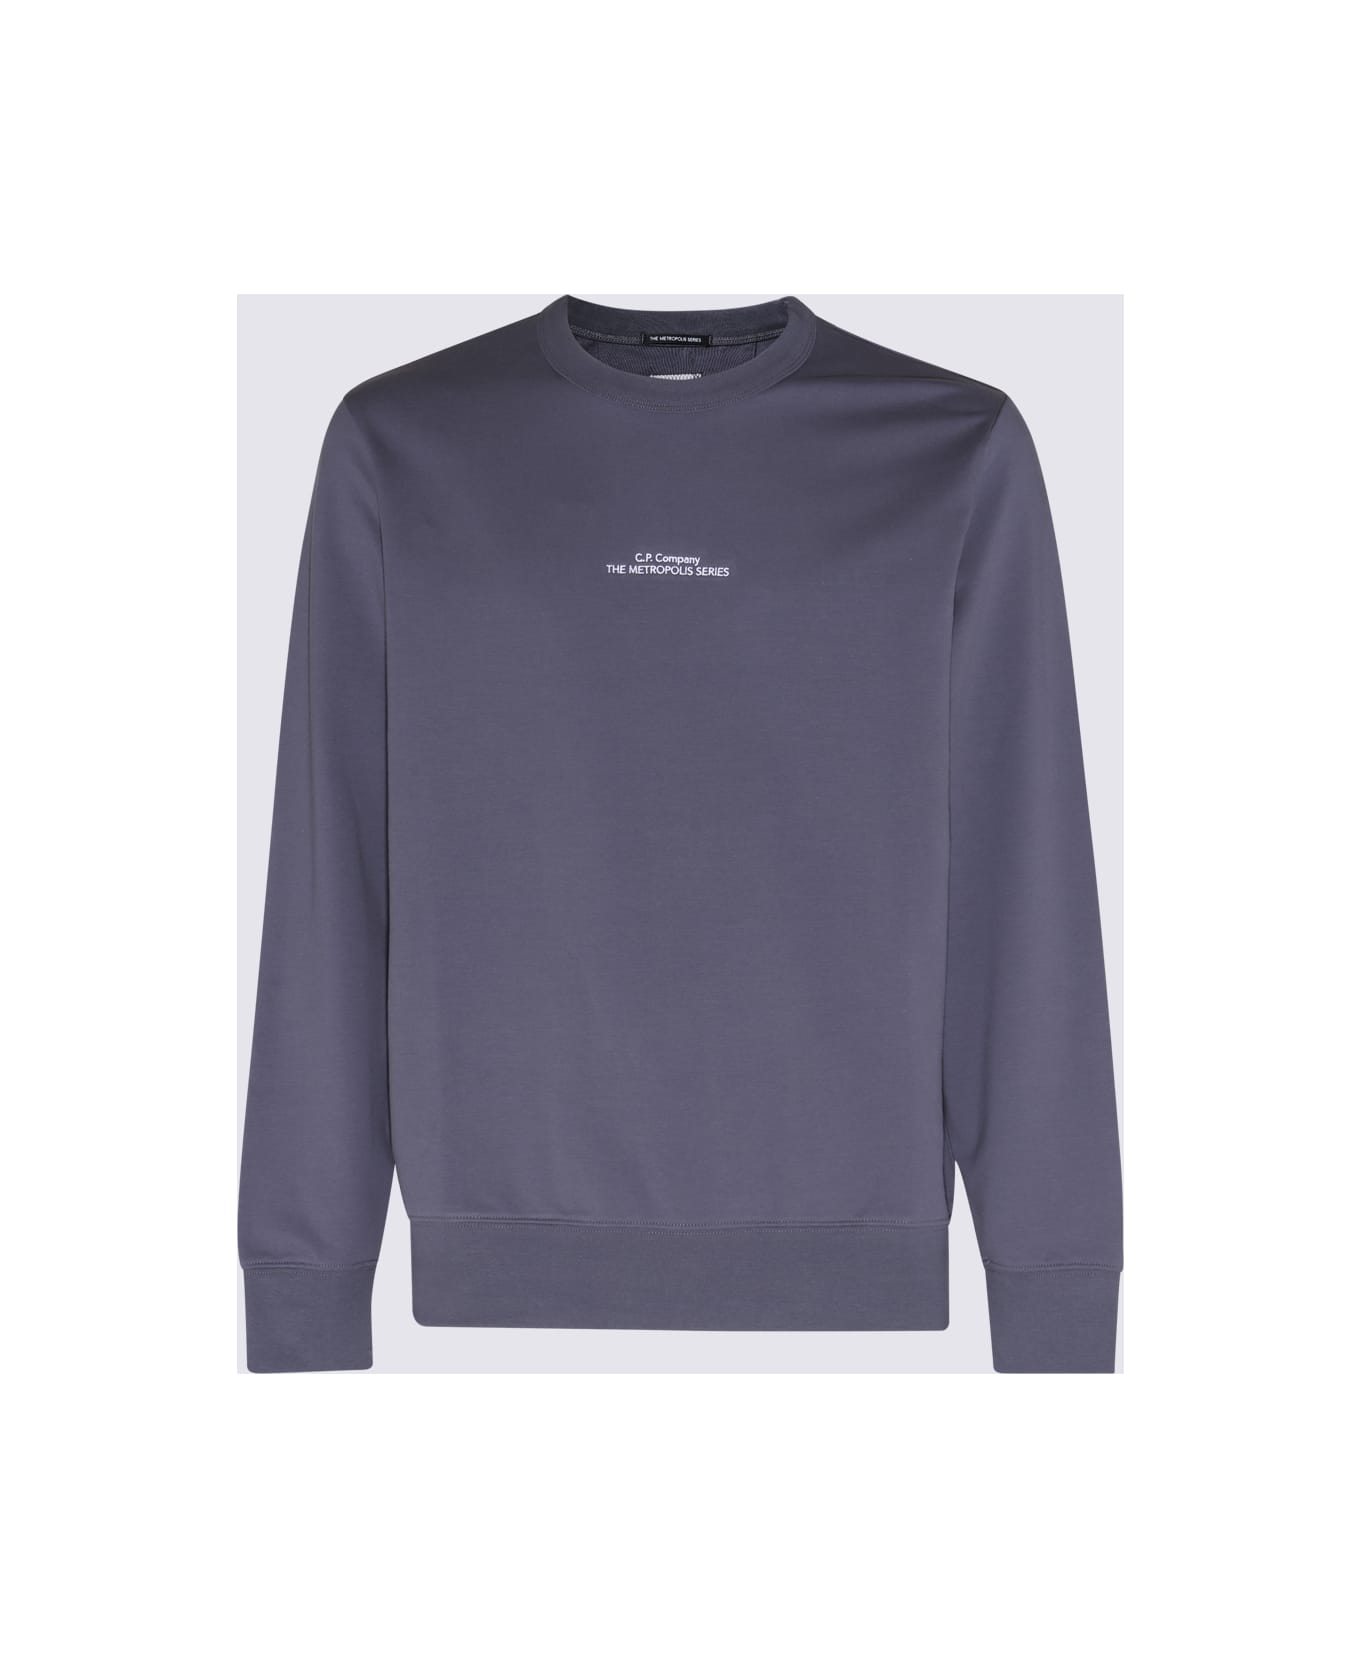 C.P. Company Ash Grey Cotton Metropolis Sweatshirt - BLUE/GREY